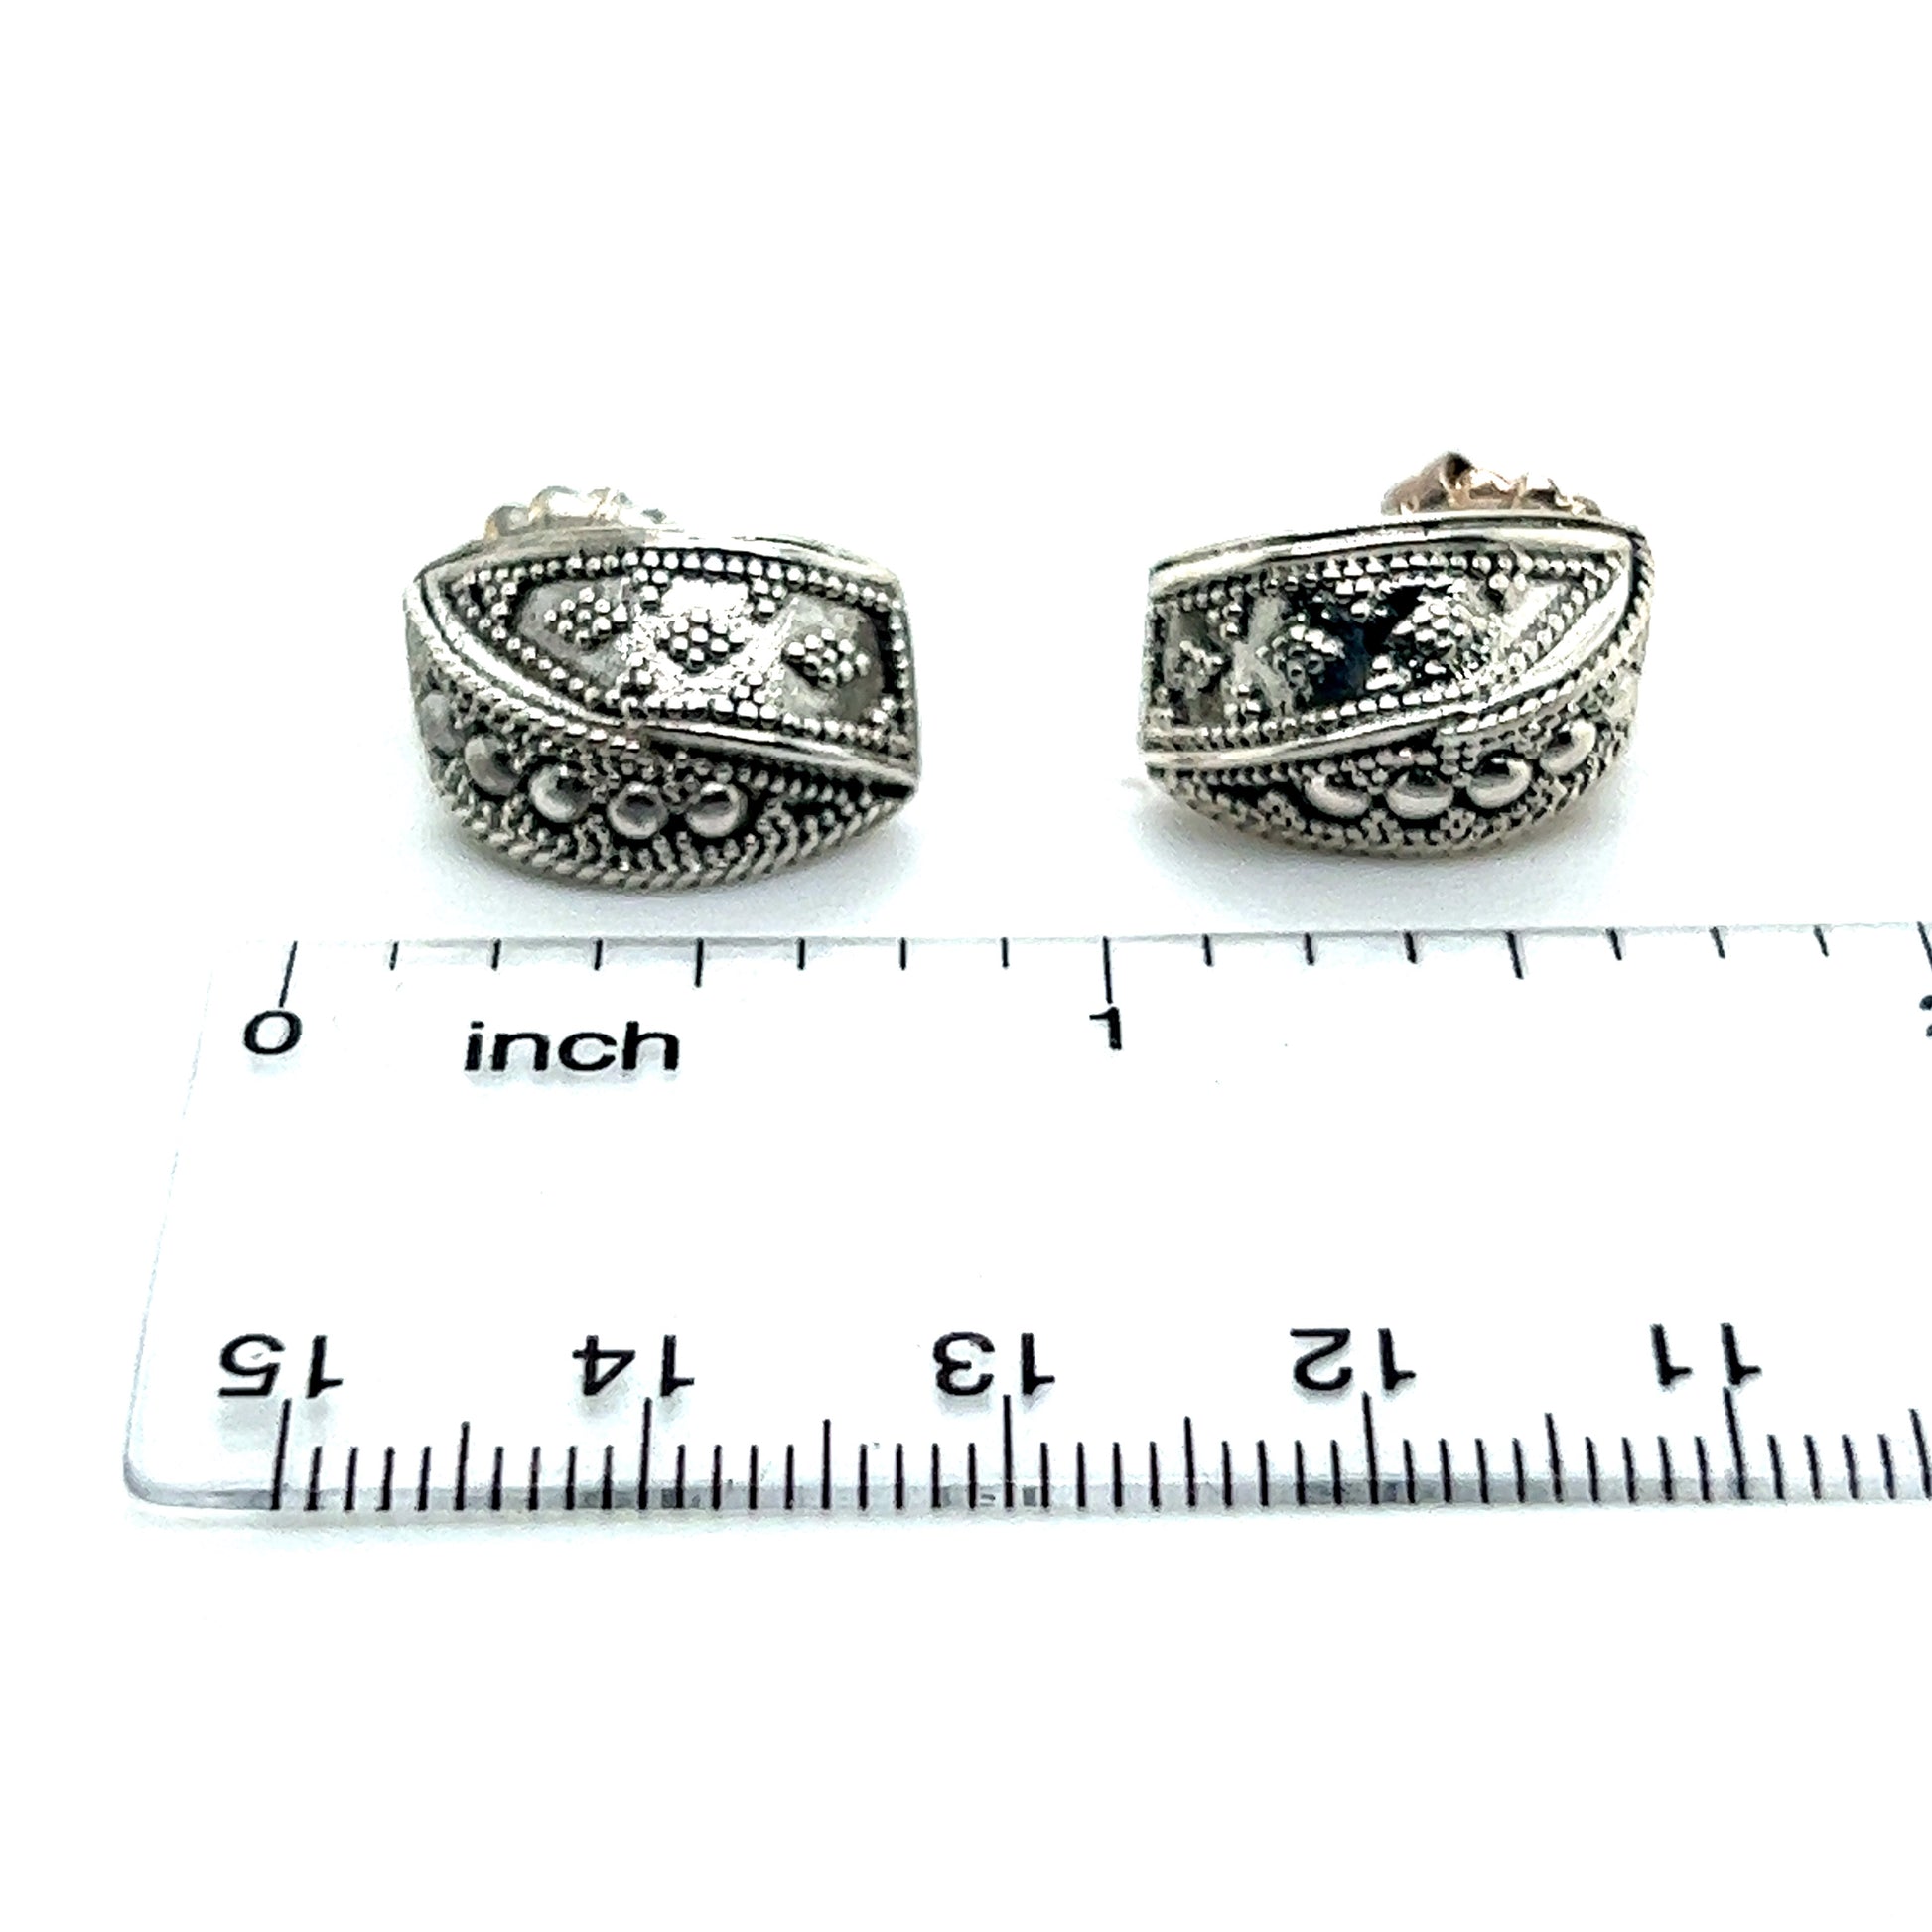 John Hardy Authentic Estate Stud Earrings Original Backs Silver JH46 - Certified Fine Jewelry